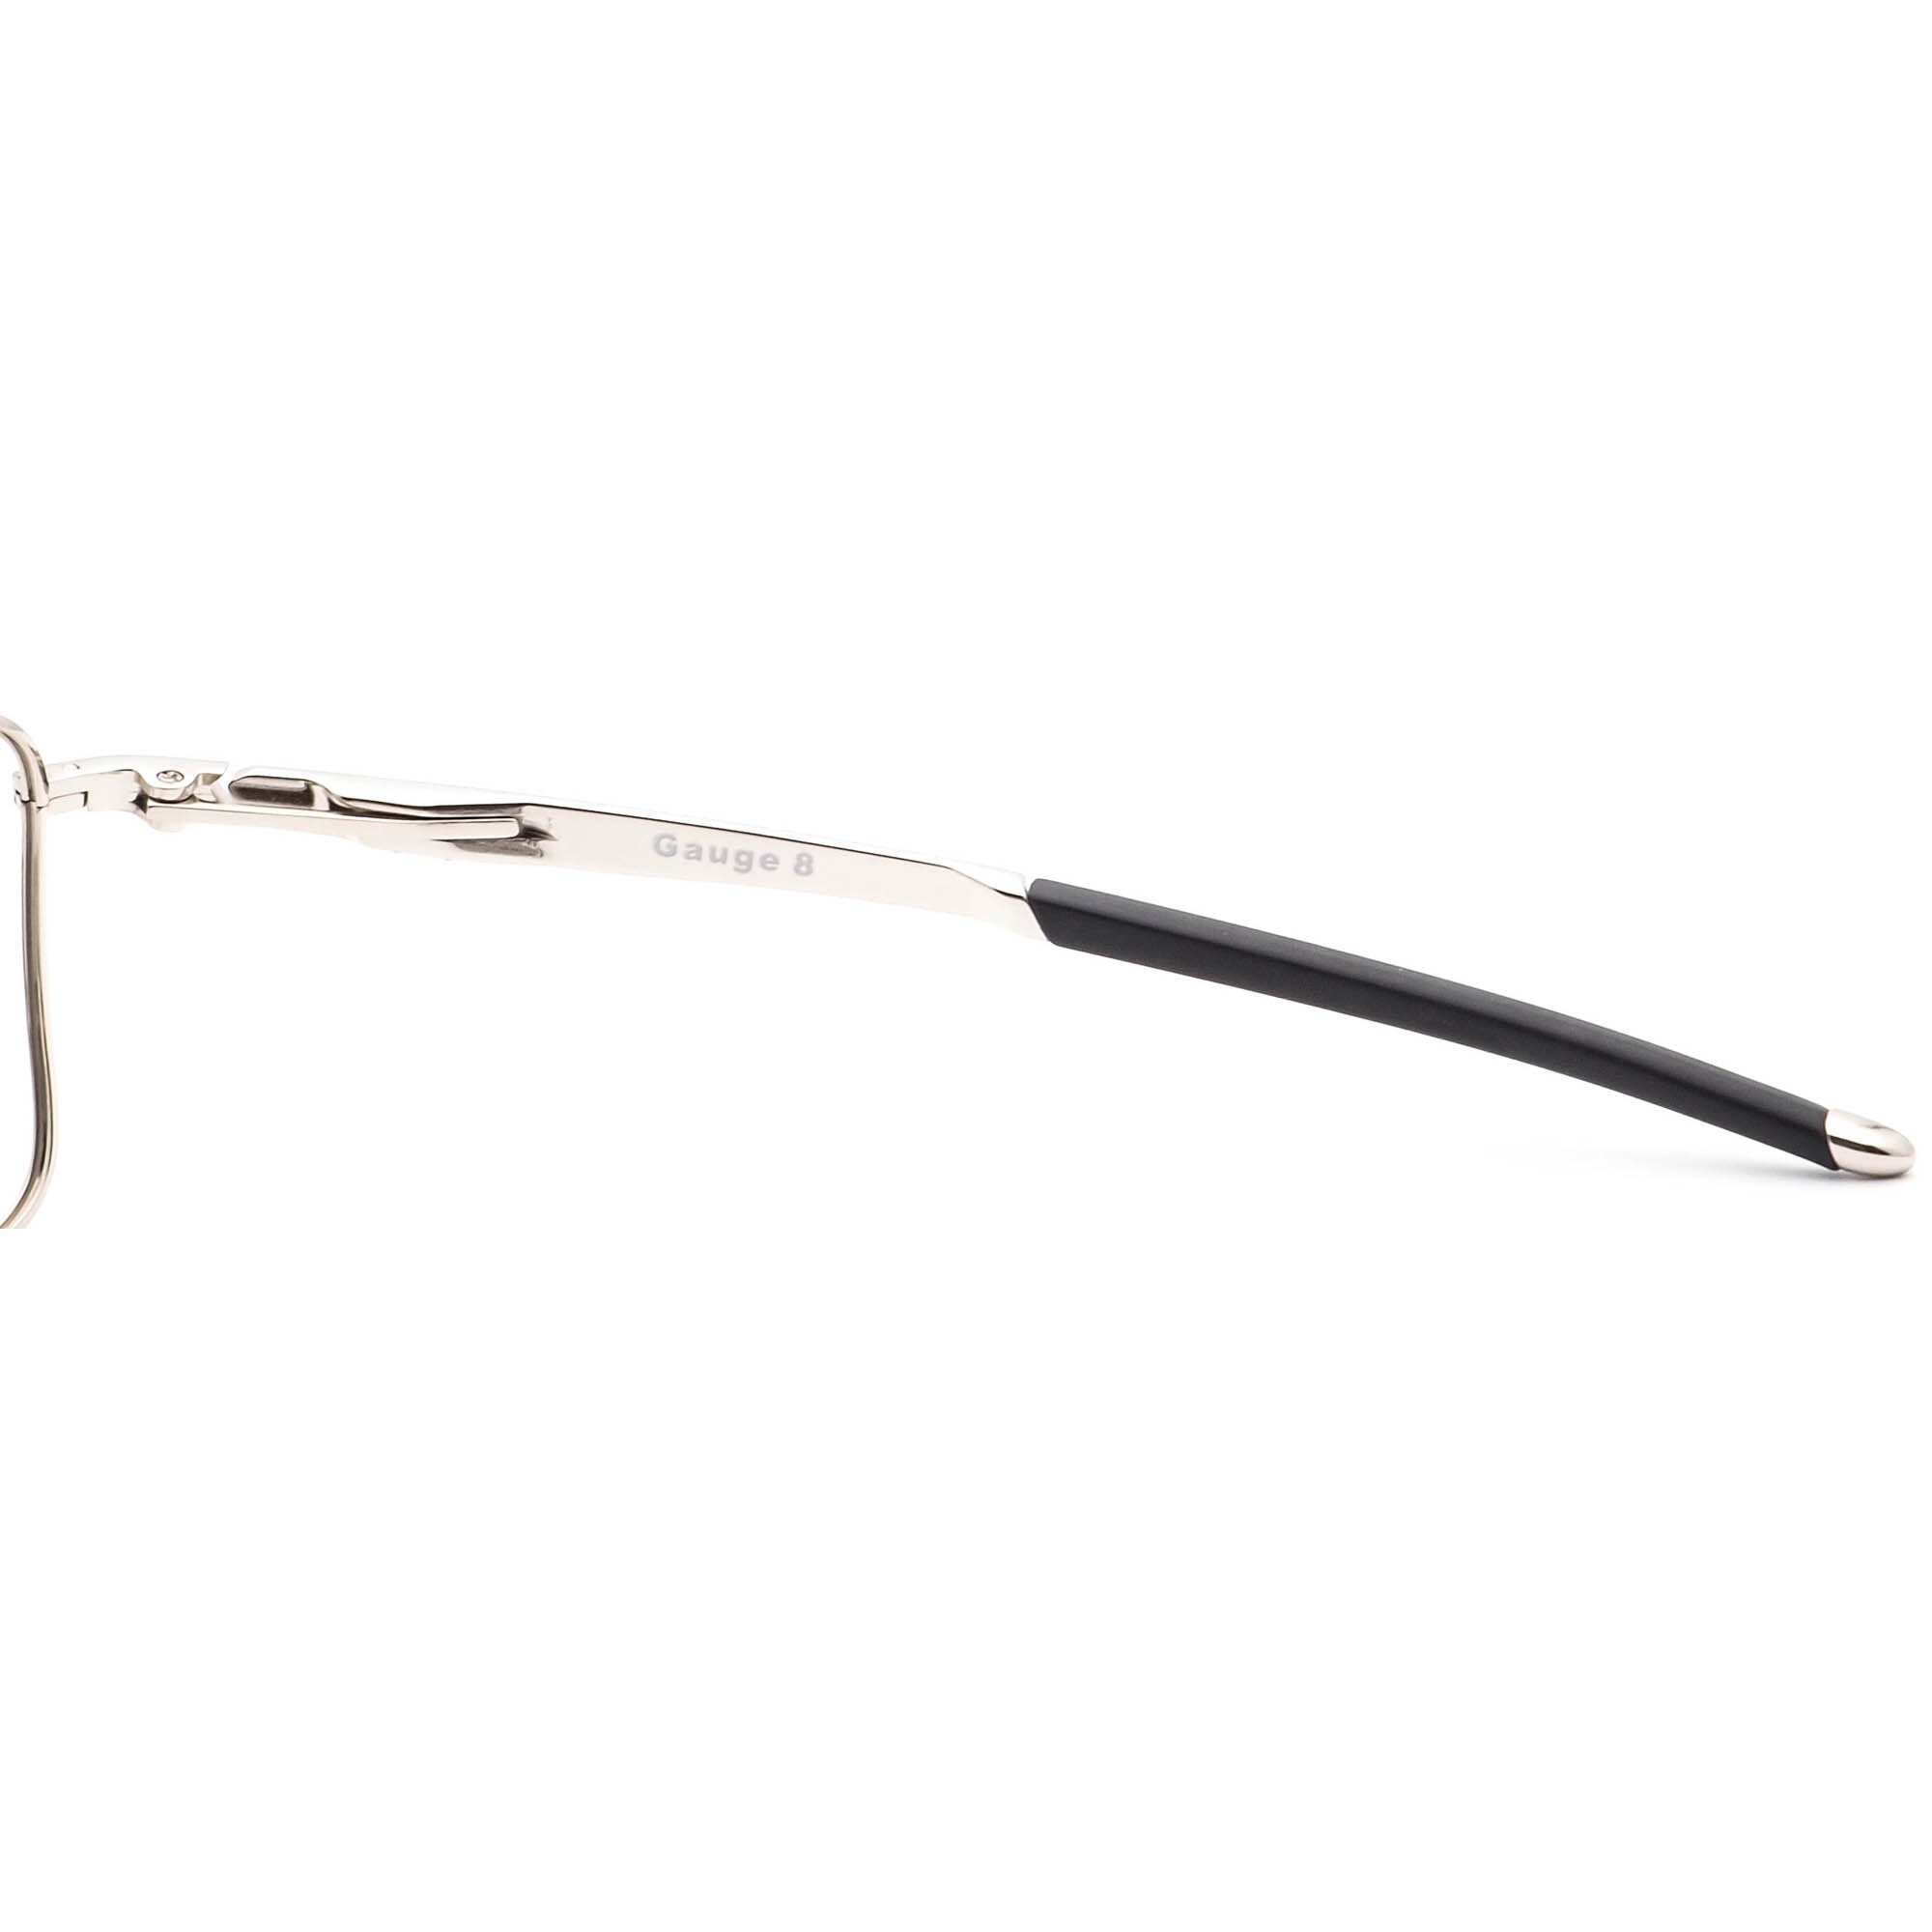 Oakley Men's Sunglasses Frame Only OO4124-0562 Gauge 8 Silver